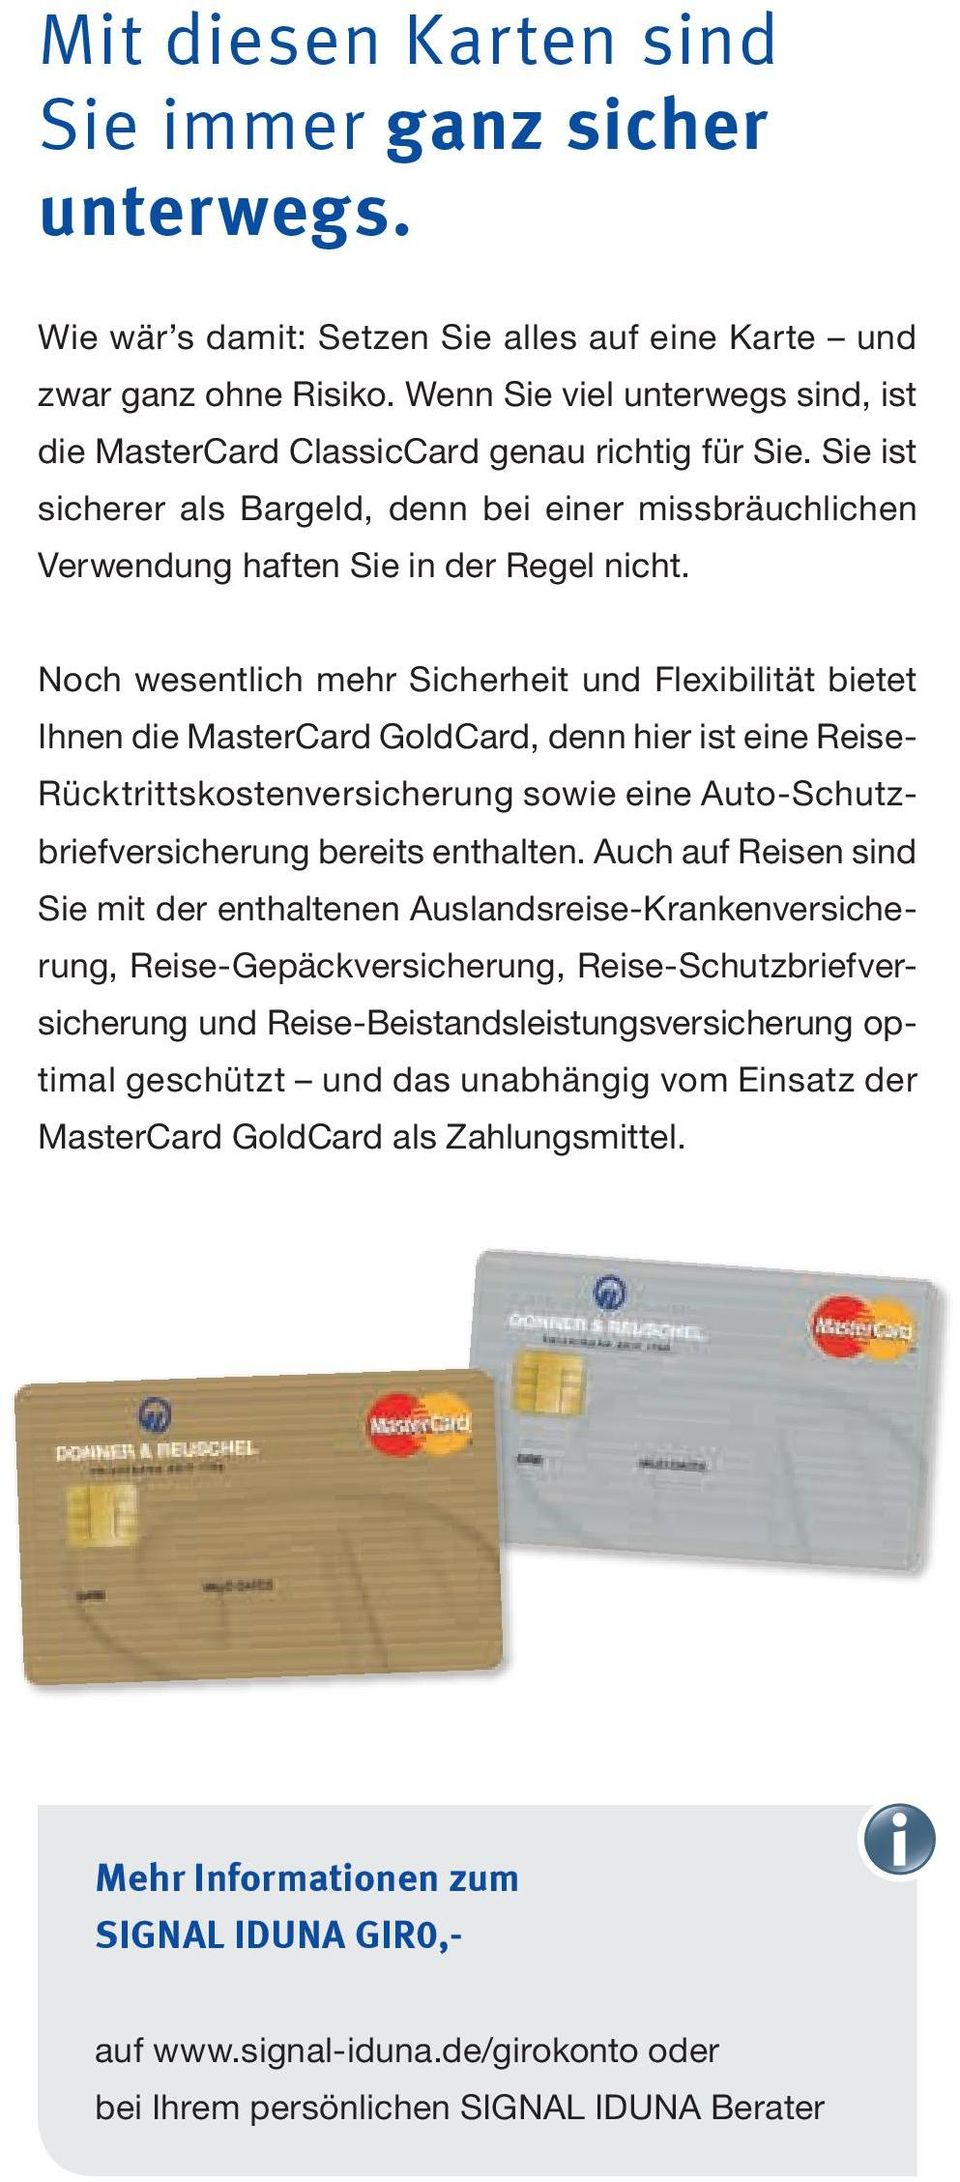 Noch wesentlich mehr Sicherheit und Flexibilität bietet Ihnen die MasterCard GoldCard, denn hier ist eine Reise- Rücktrittskostenversicherung sowie eine Auto-Schutzbriefversicherung bereits enthalten.